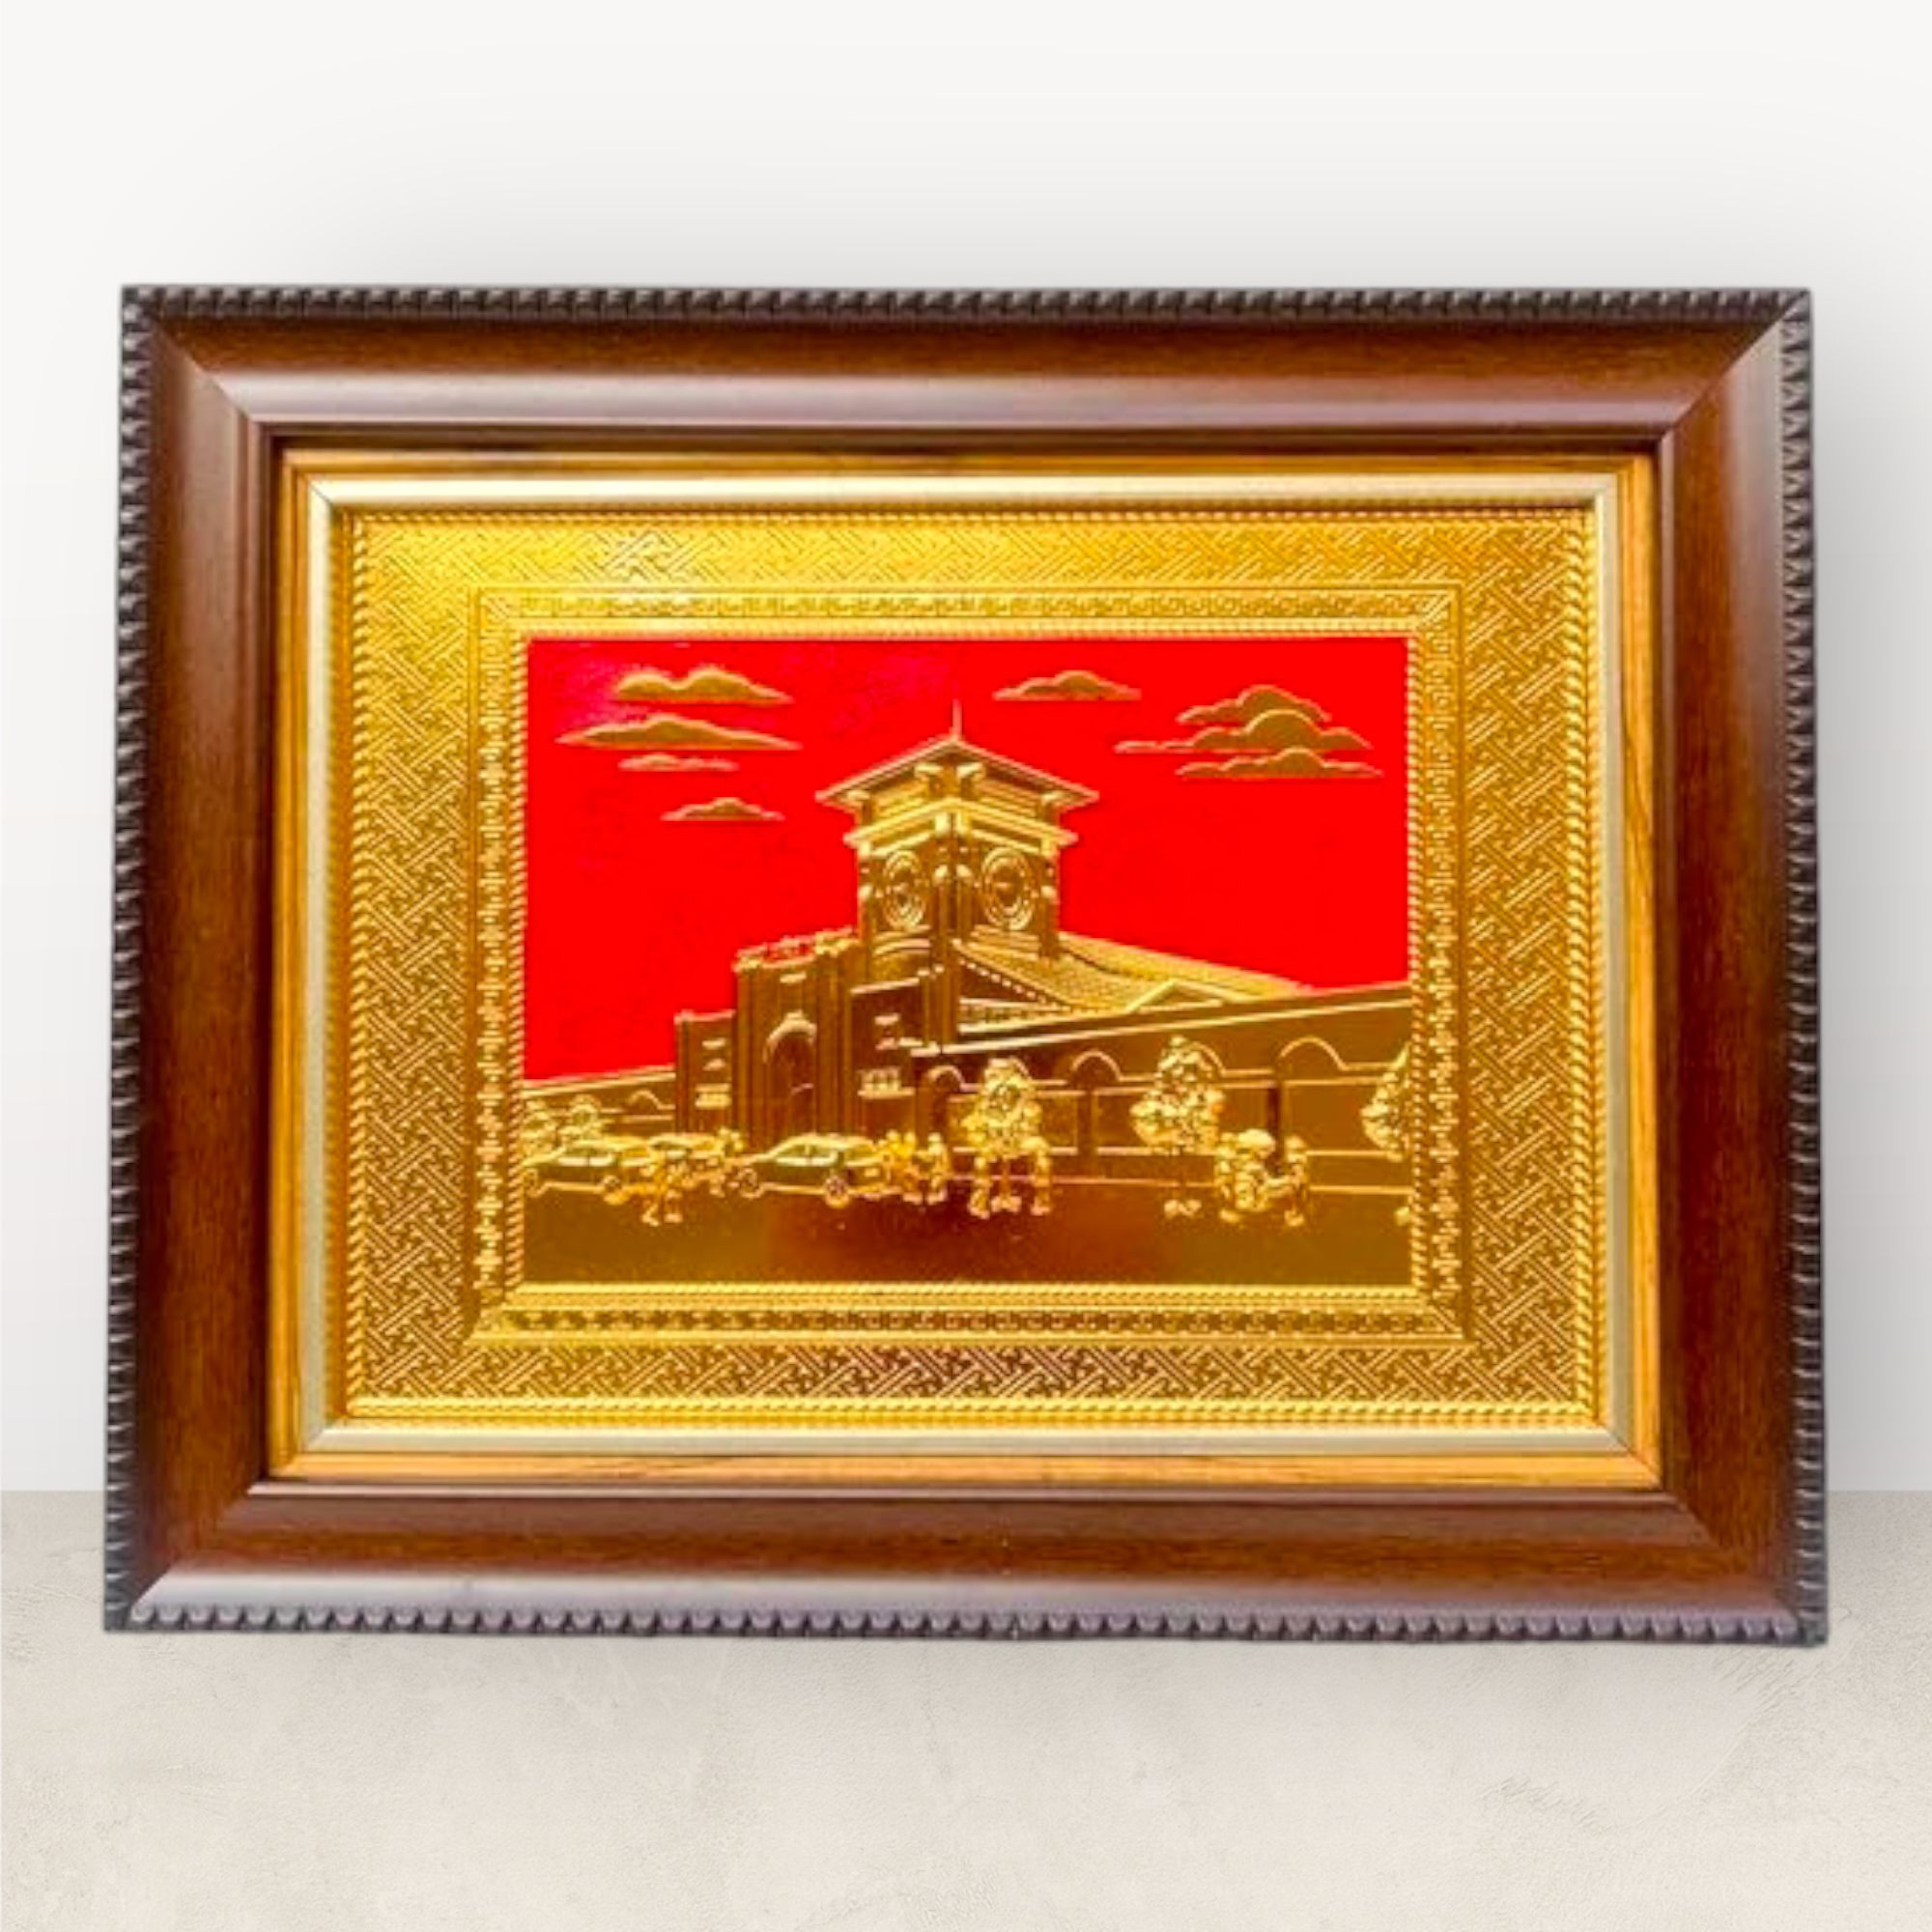  Tranh Chợ Bến Thành đồng vàng mạ vàng 24K 28x34cm mẫu 1 